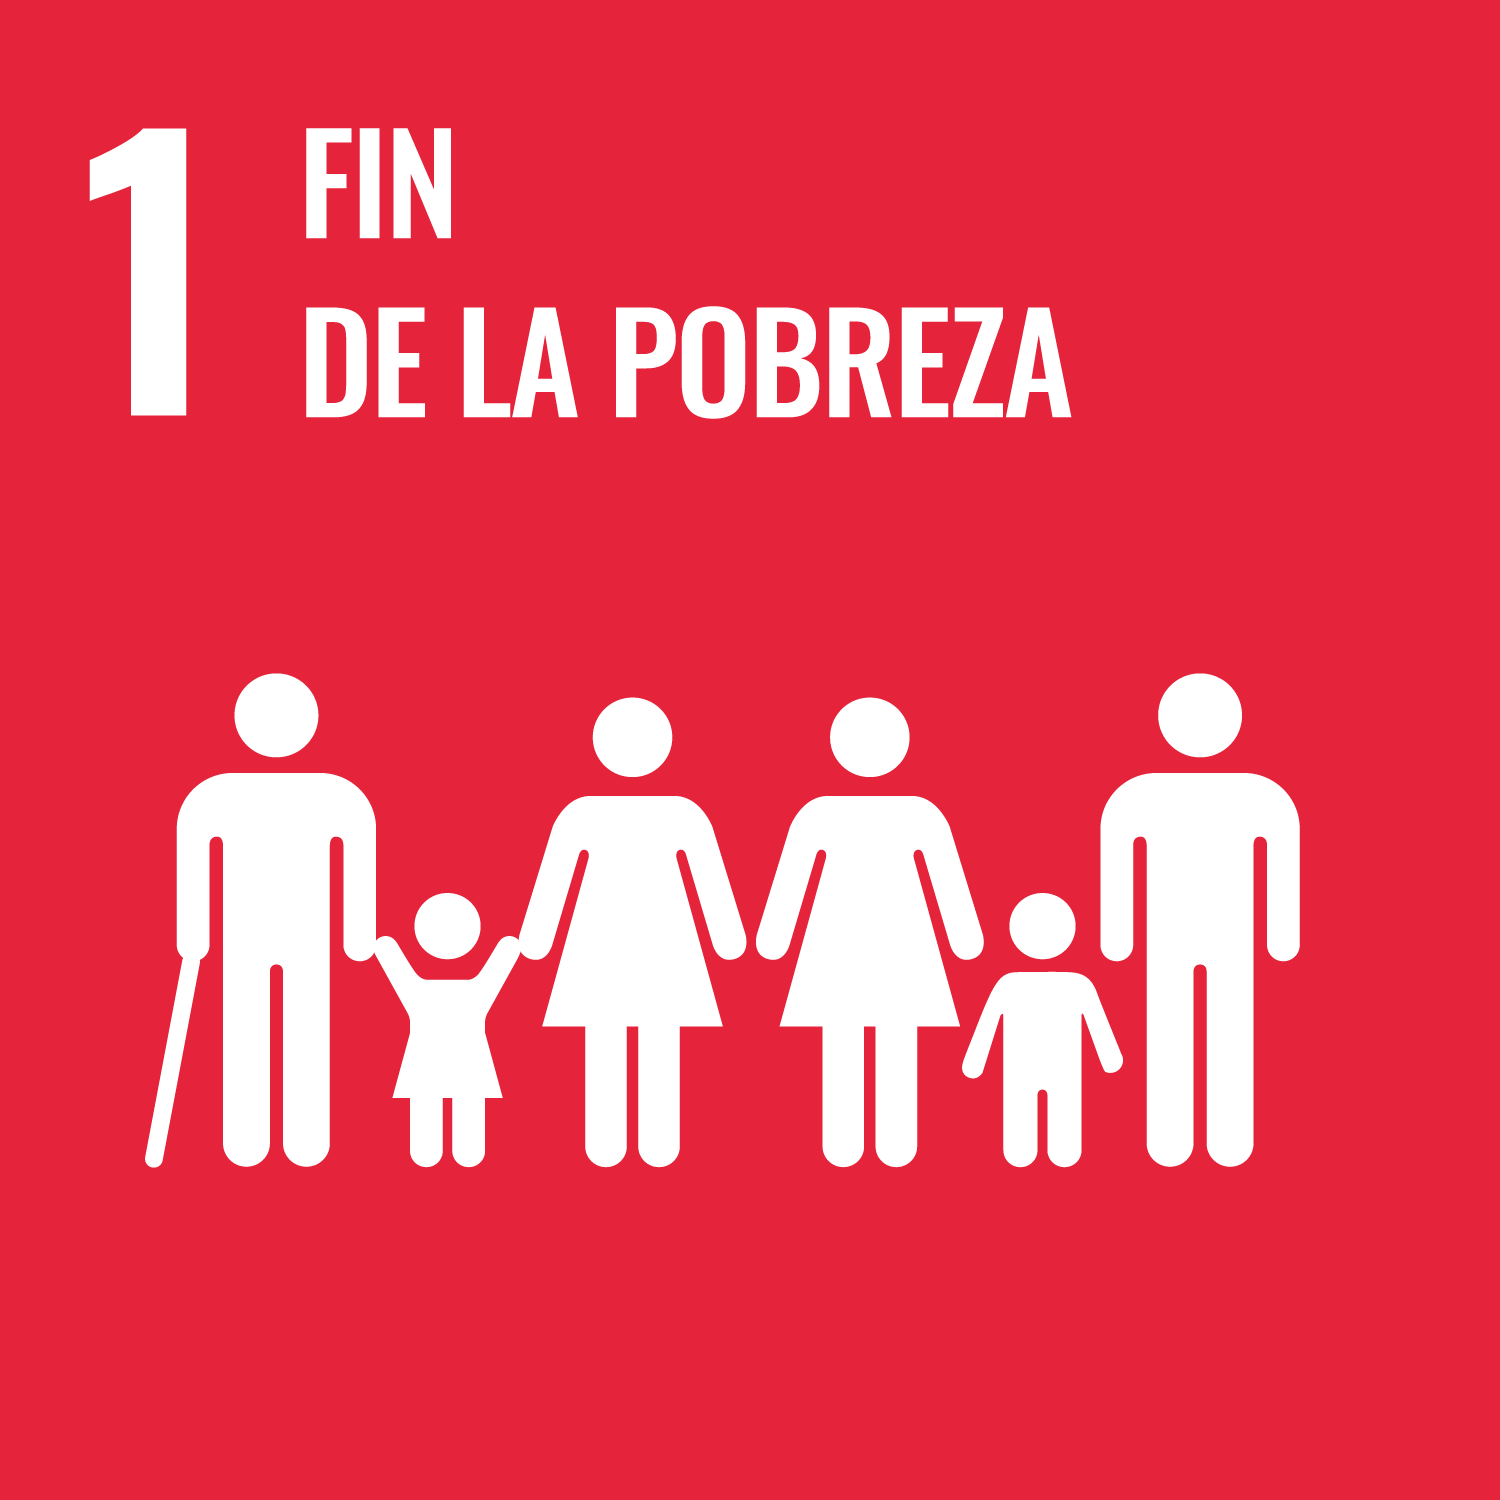 Compromiso de Visita Gijón/Xixón con el ODS 01 fin de la pobreza